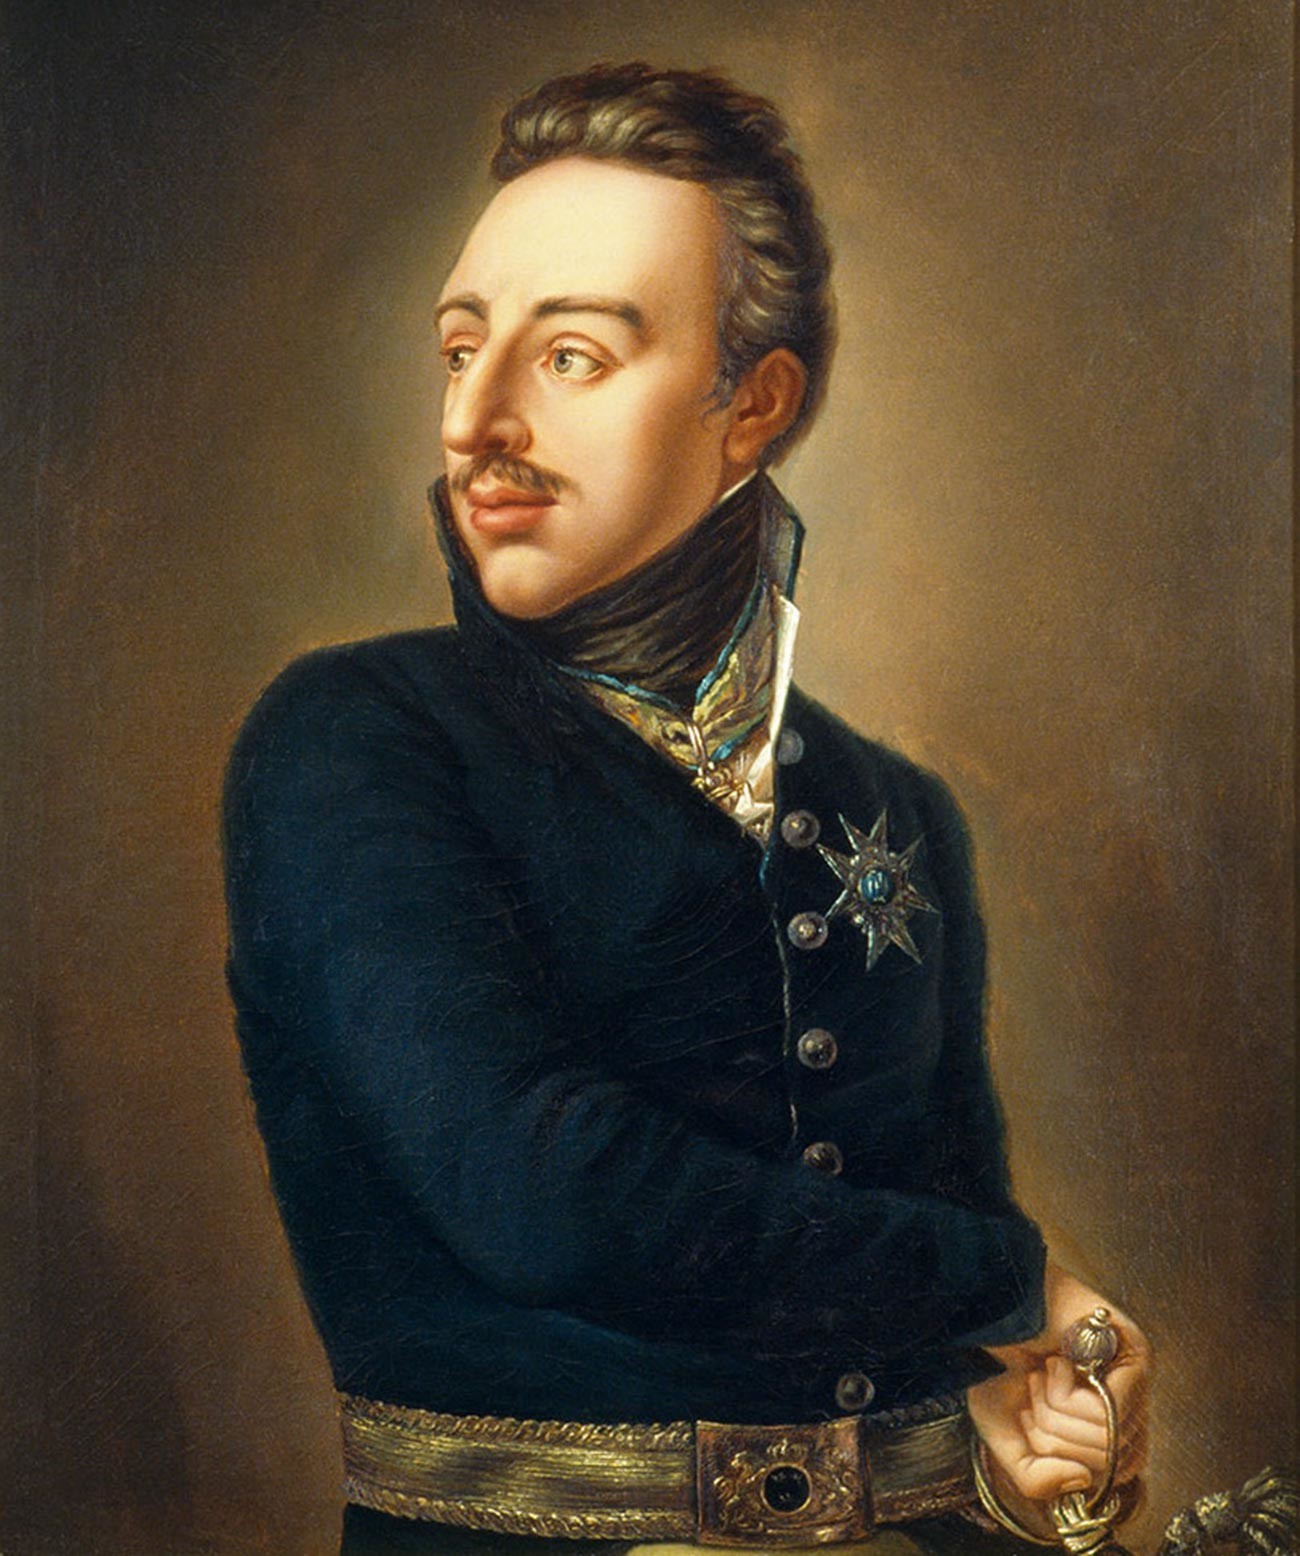 Il re Gustavo IV Adolfo di Svezia
